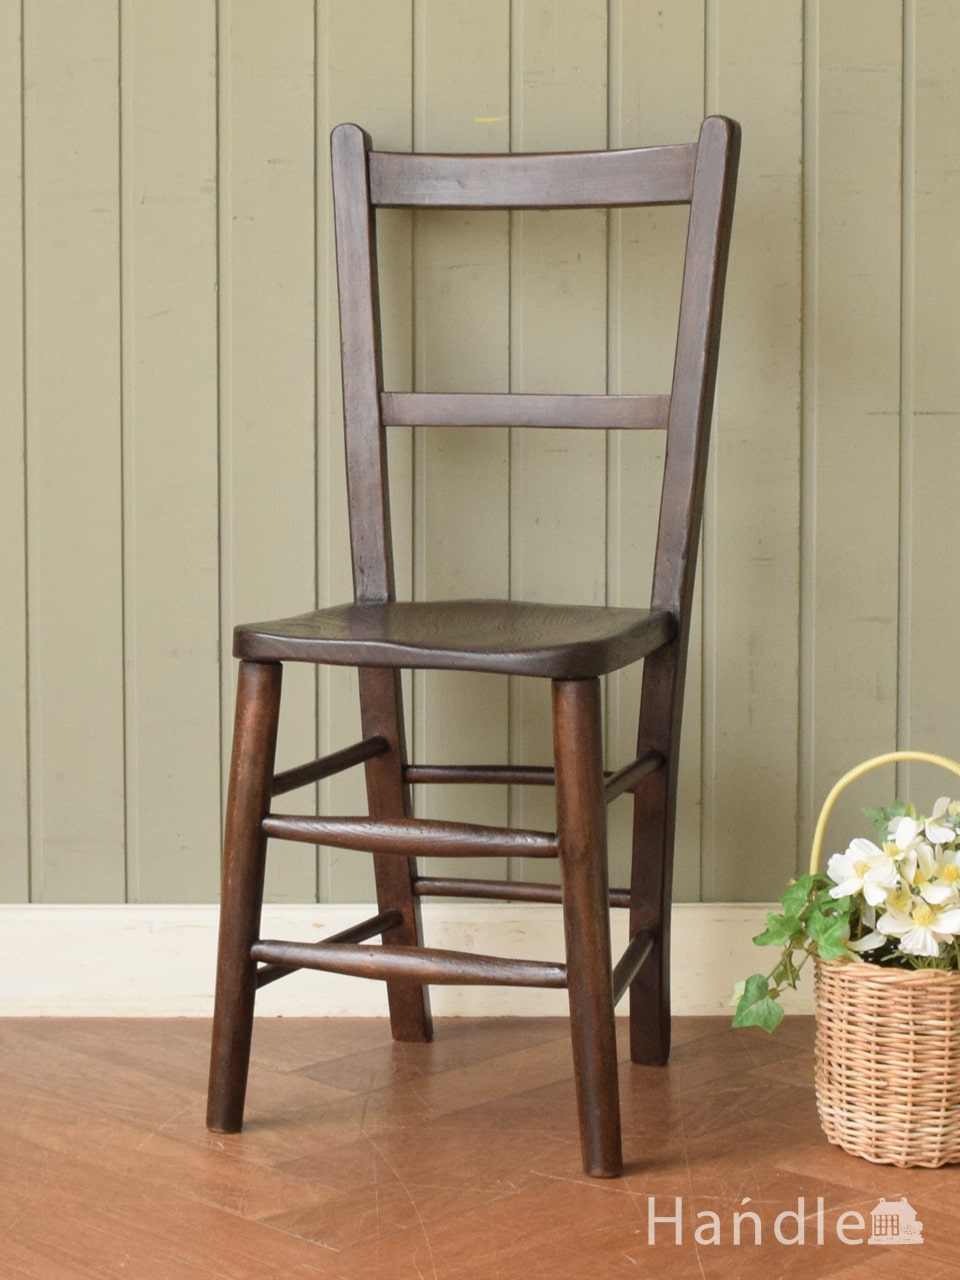 イギリスから届いたアンティークの椅子、素朴であたたかい雰囲気のスクールチェア  (k-1430-c)